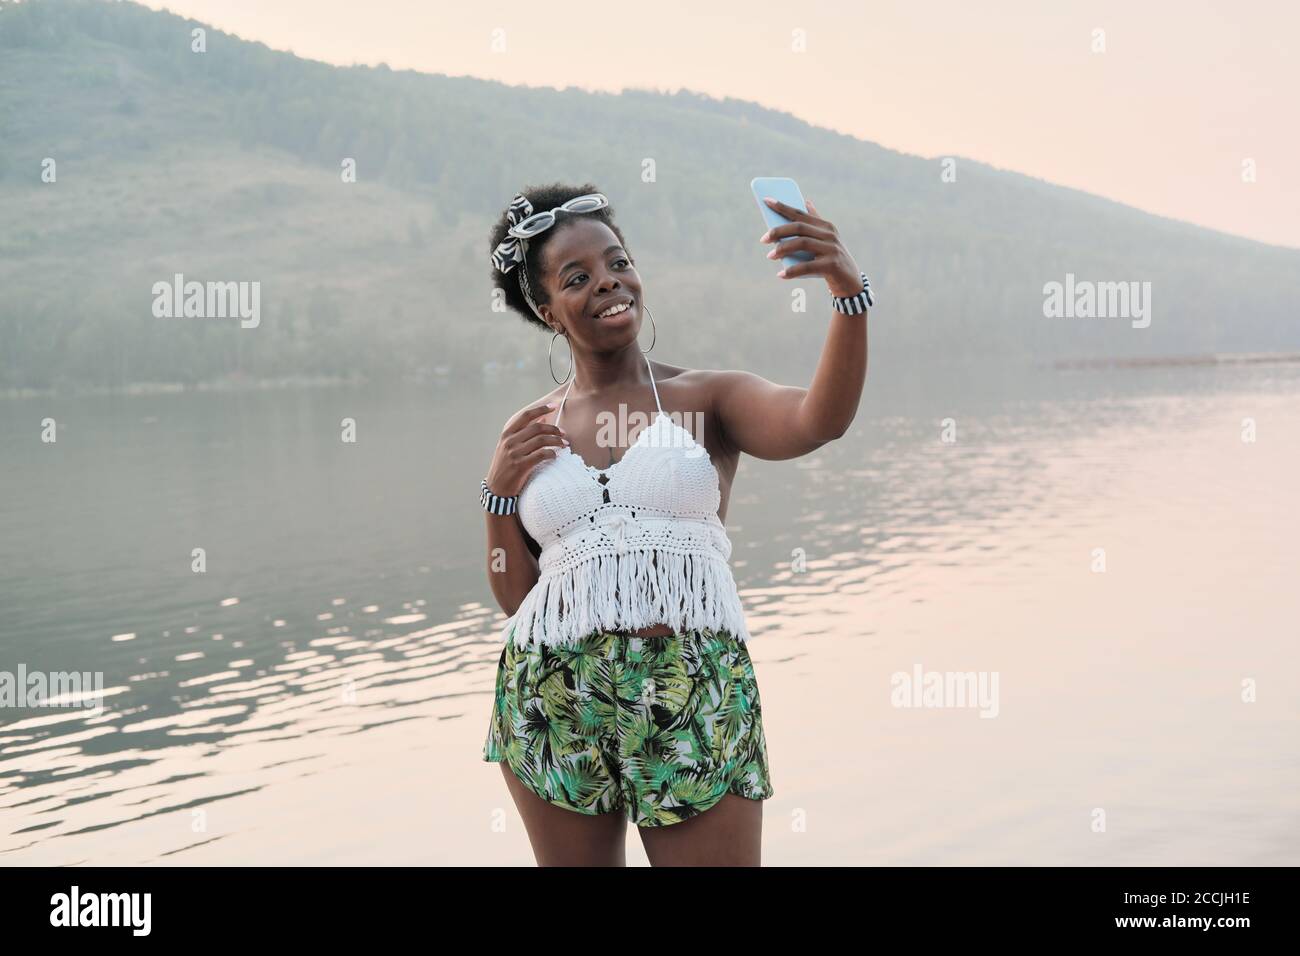 Afrikanische junge Frau, die gegen den Berg und den See steht Und Selfie auf ihrem Handy machen Stockfoto